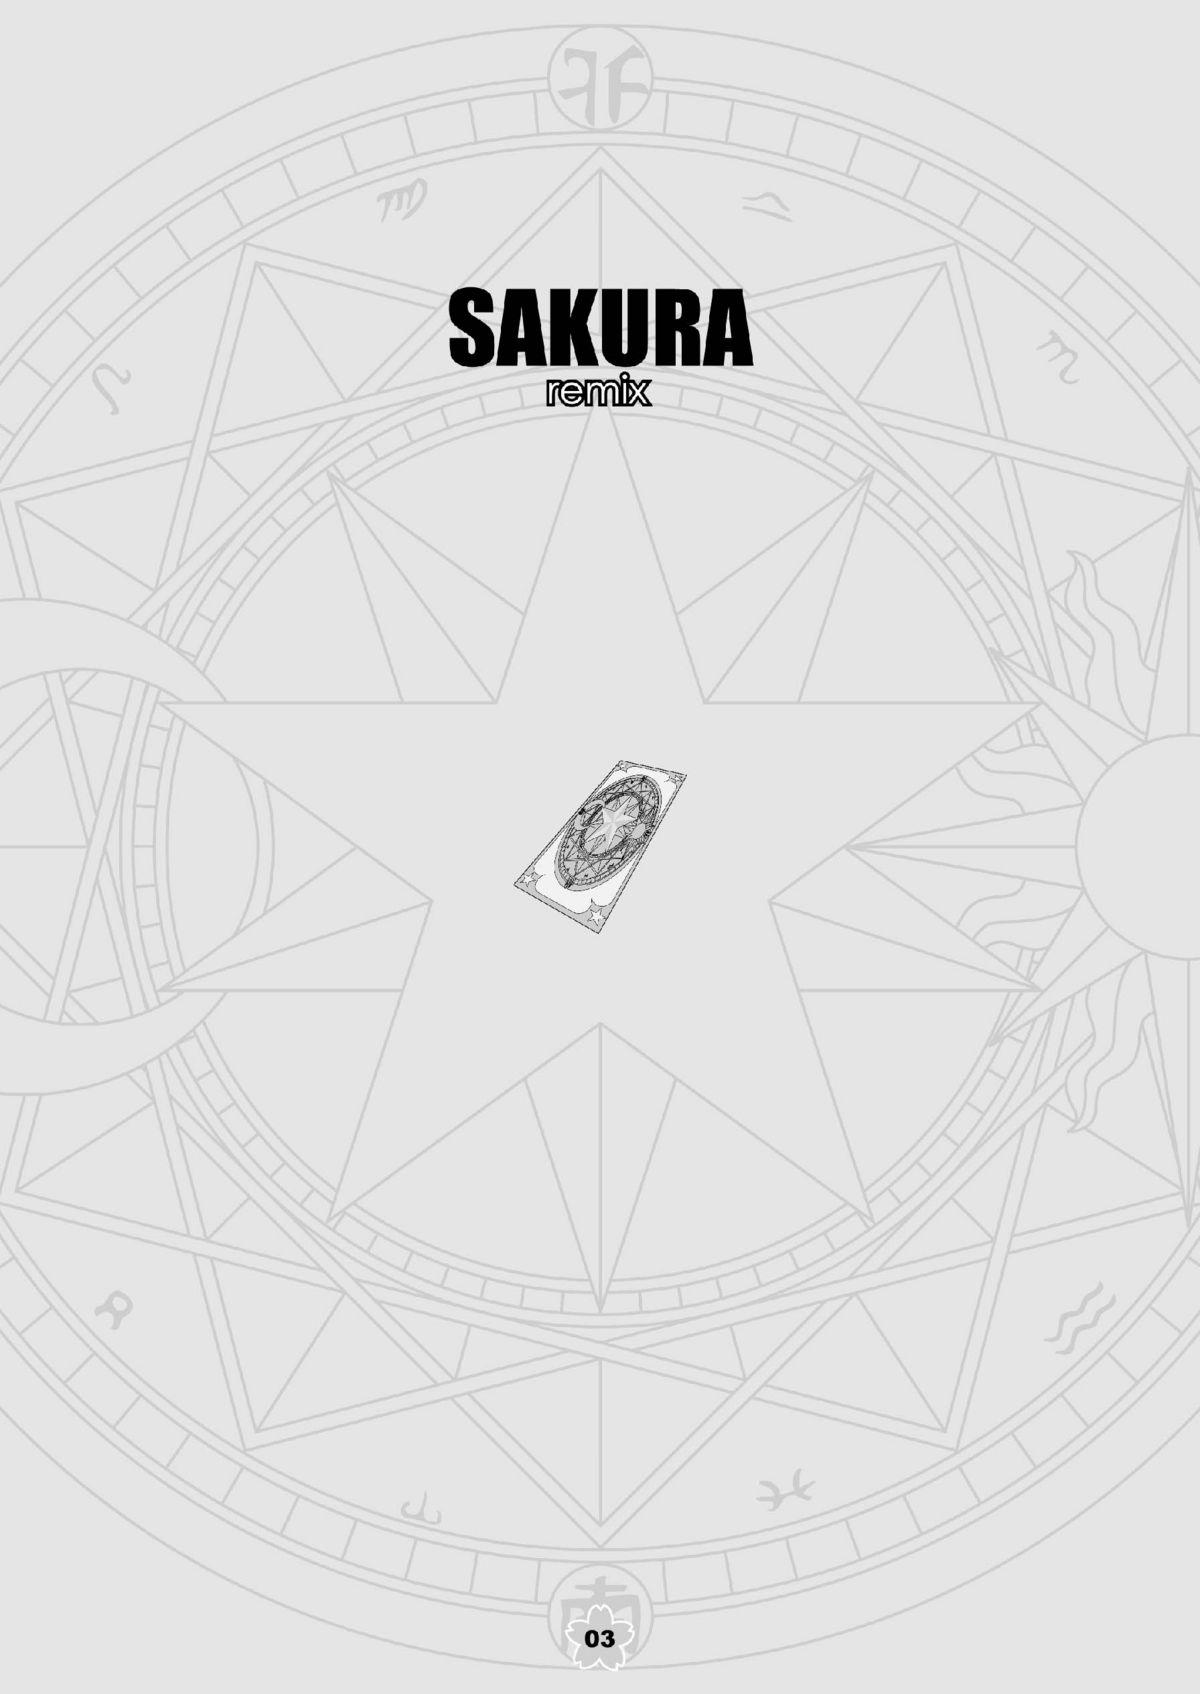 SAKURA remix 2